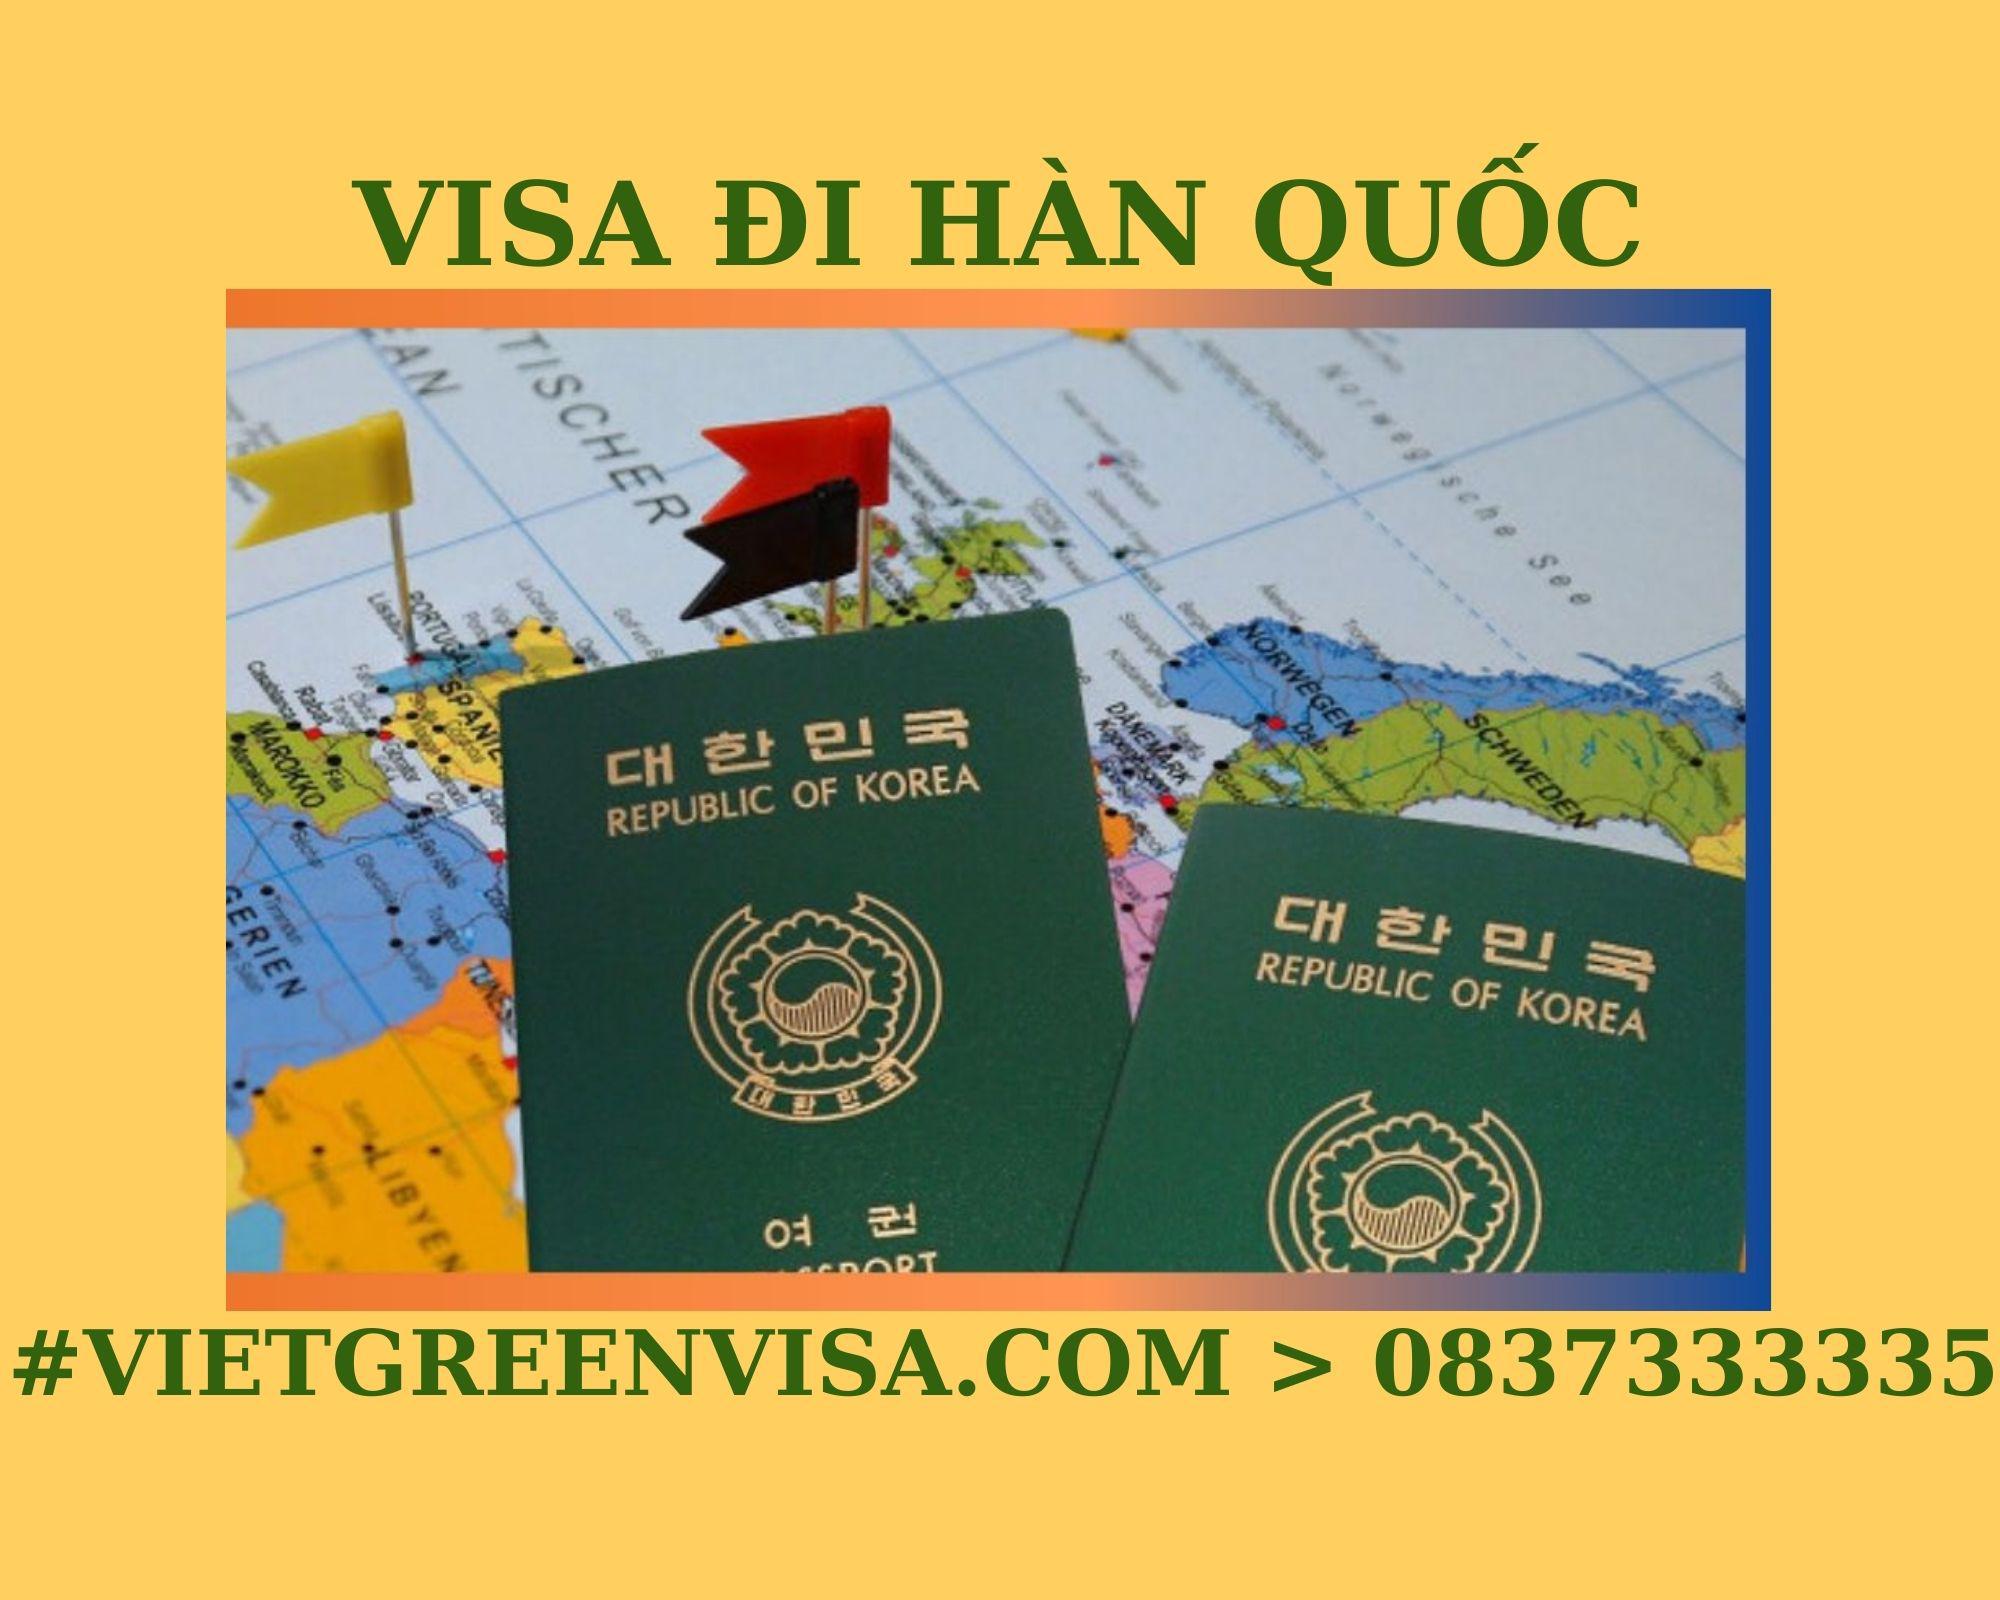 Dịch vụ làm Visa Hàn Quốc thăm thân uy tín, nhanh chóng, giá rẻ